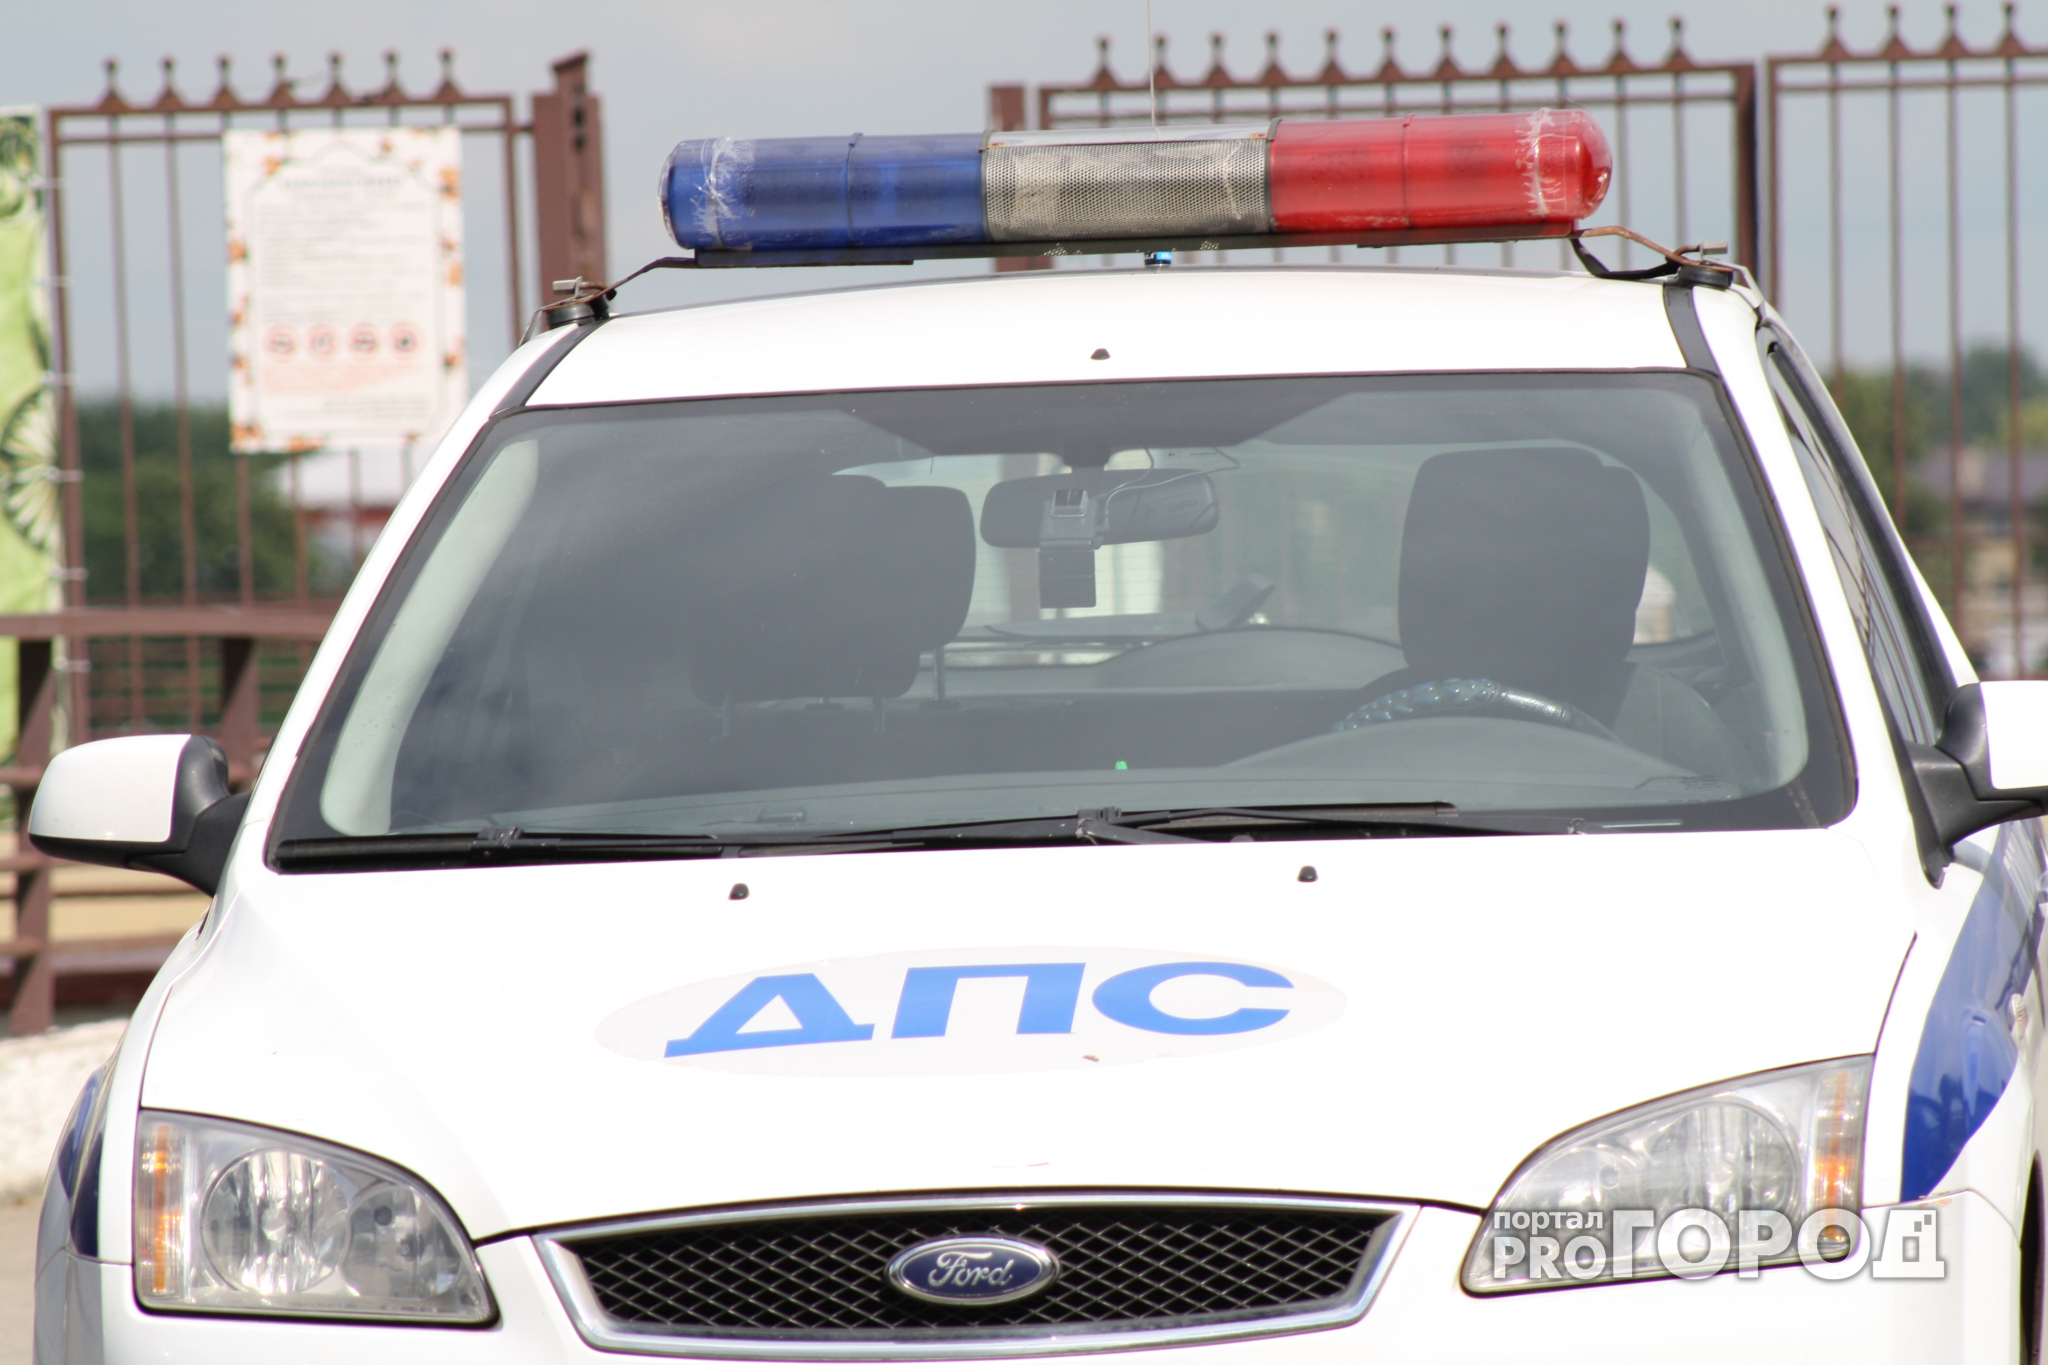 В Йошкар-Оле на бульваре водитель Lada сбил 4-летнюю девочку